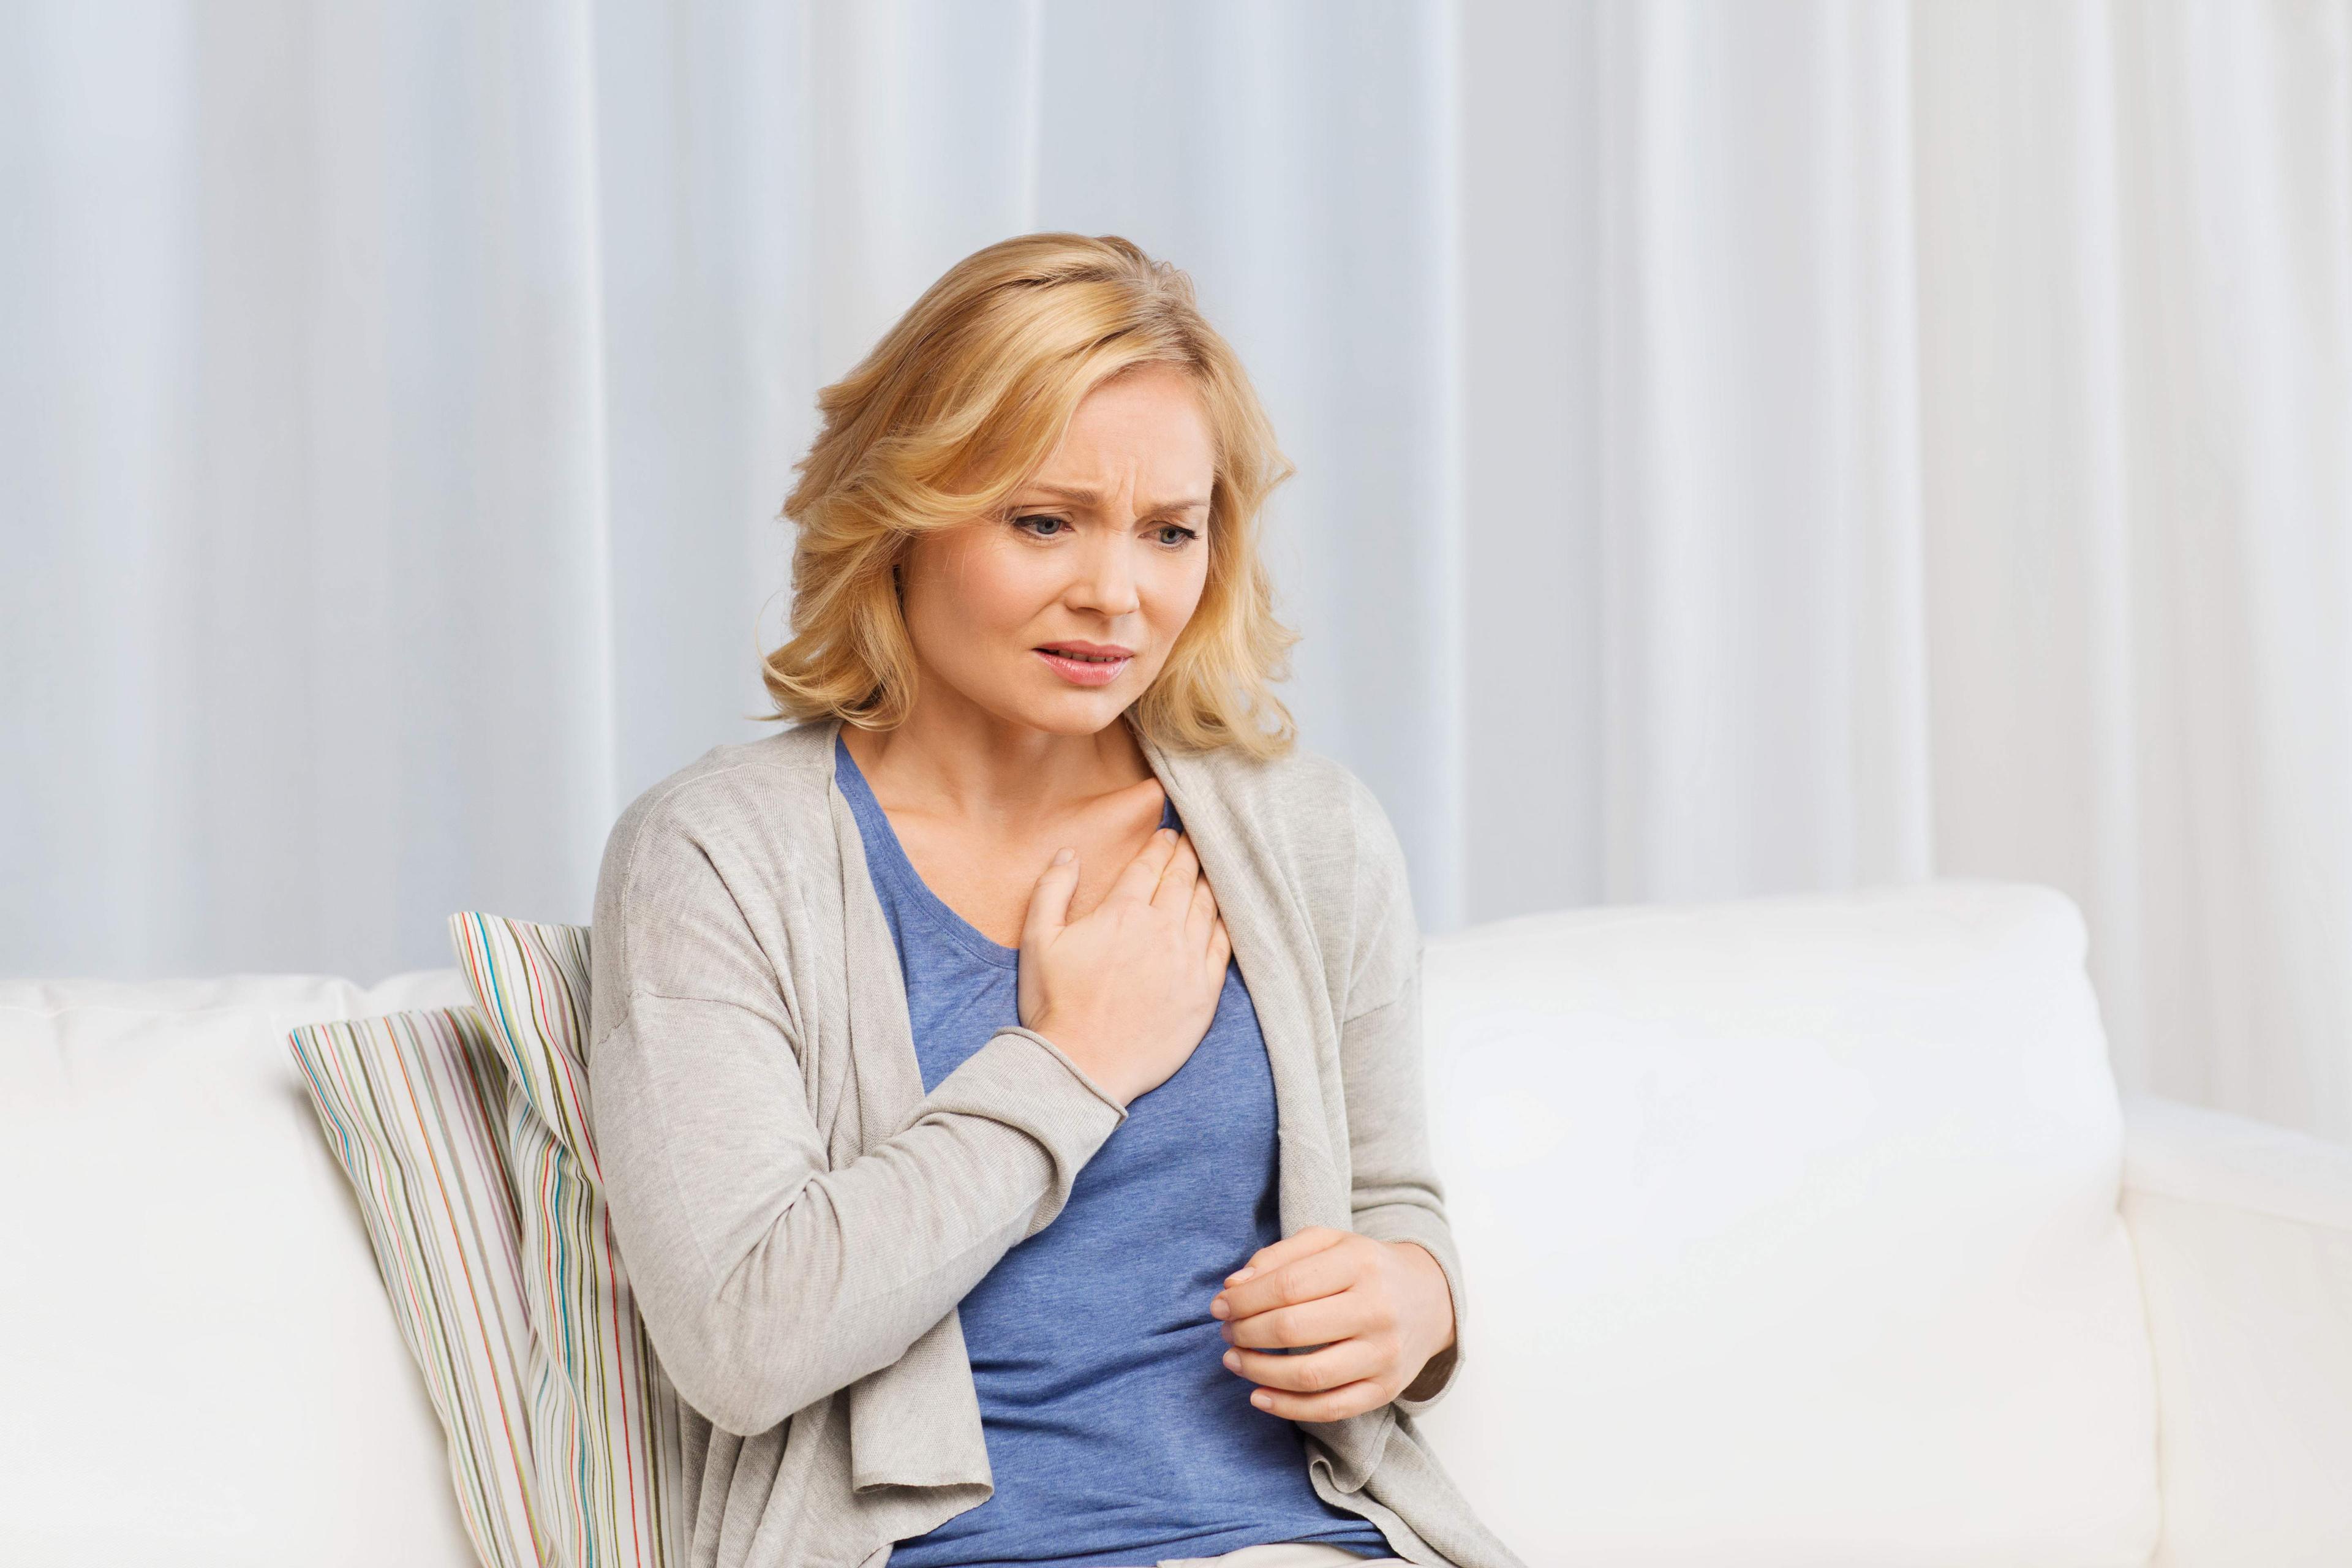 Ppretilost kod žena povezna je s prosječno 85 posto većim rizikom za bolesti srca - Avaz